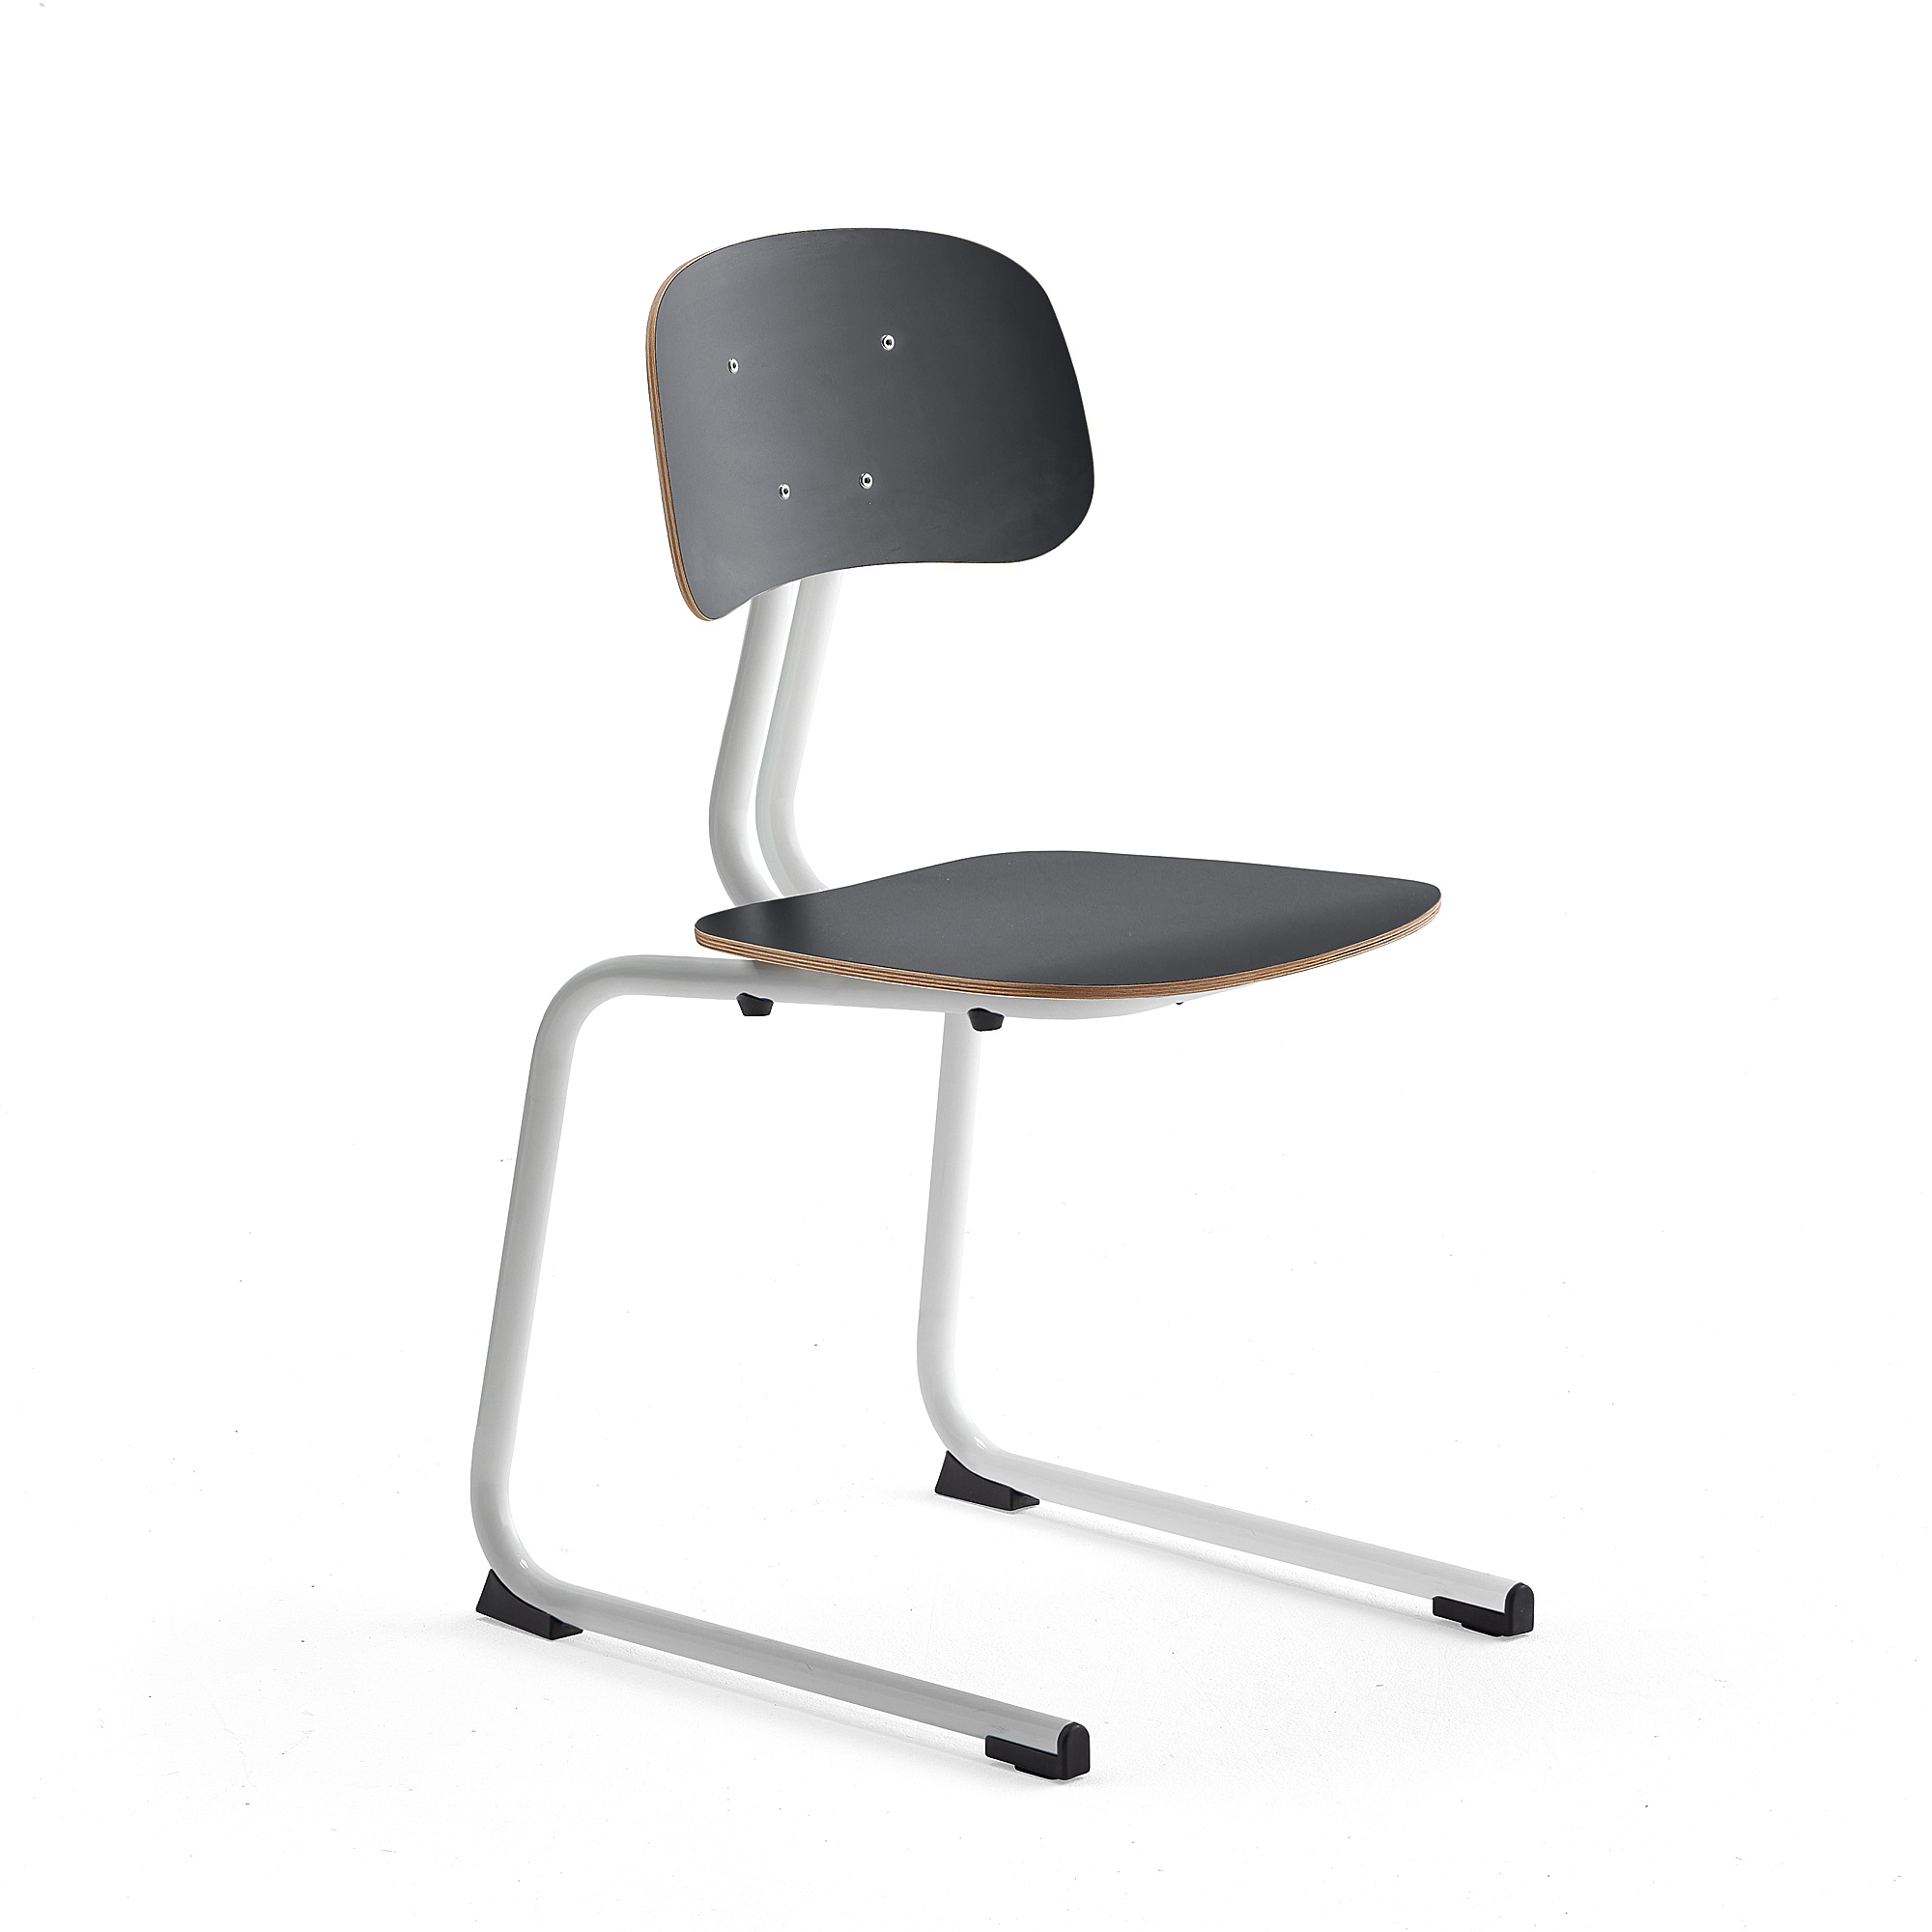 Školní židle YNGVE, ližinová podnož, výška 460 mm, bílá/antracitově šedá